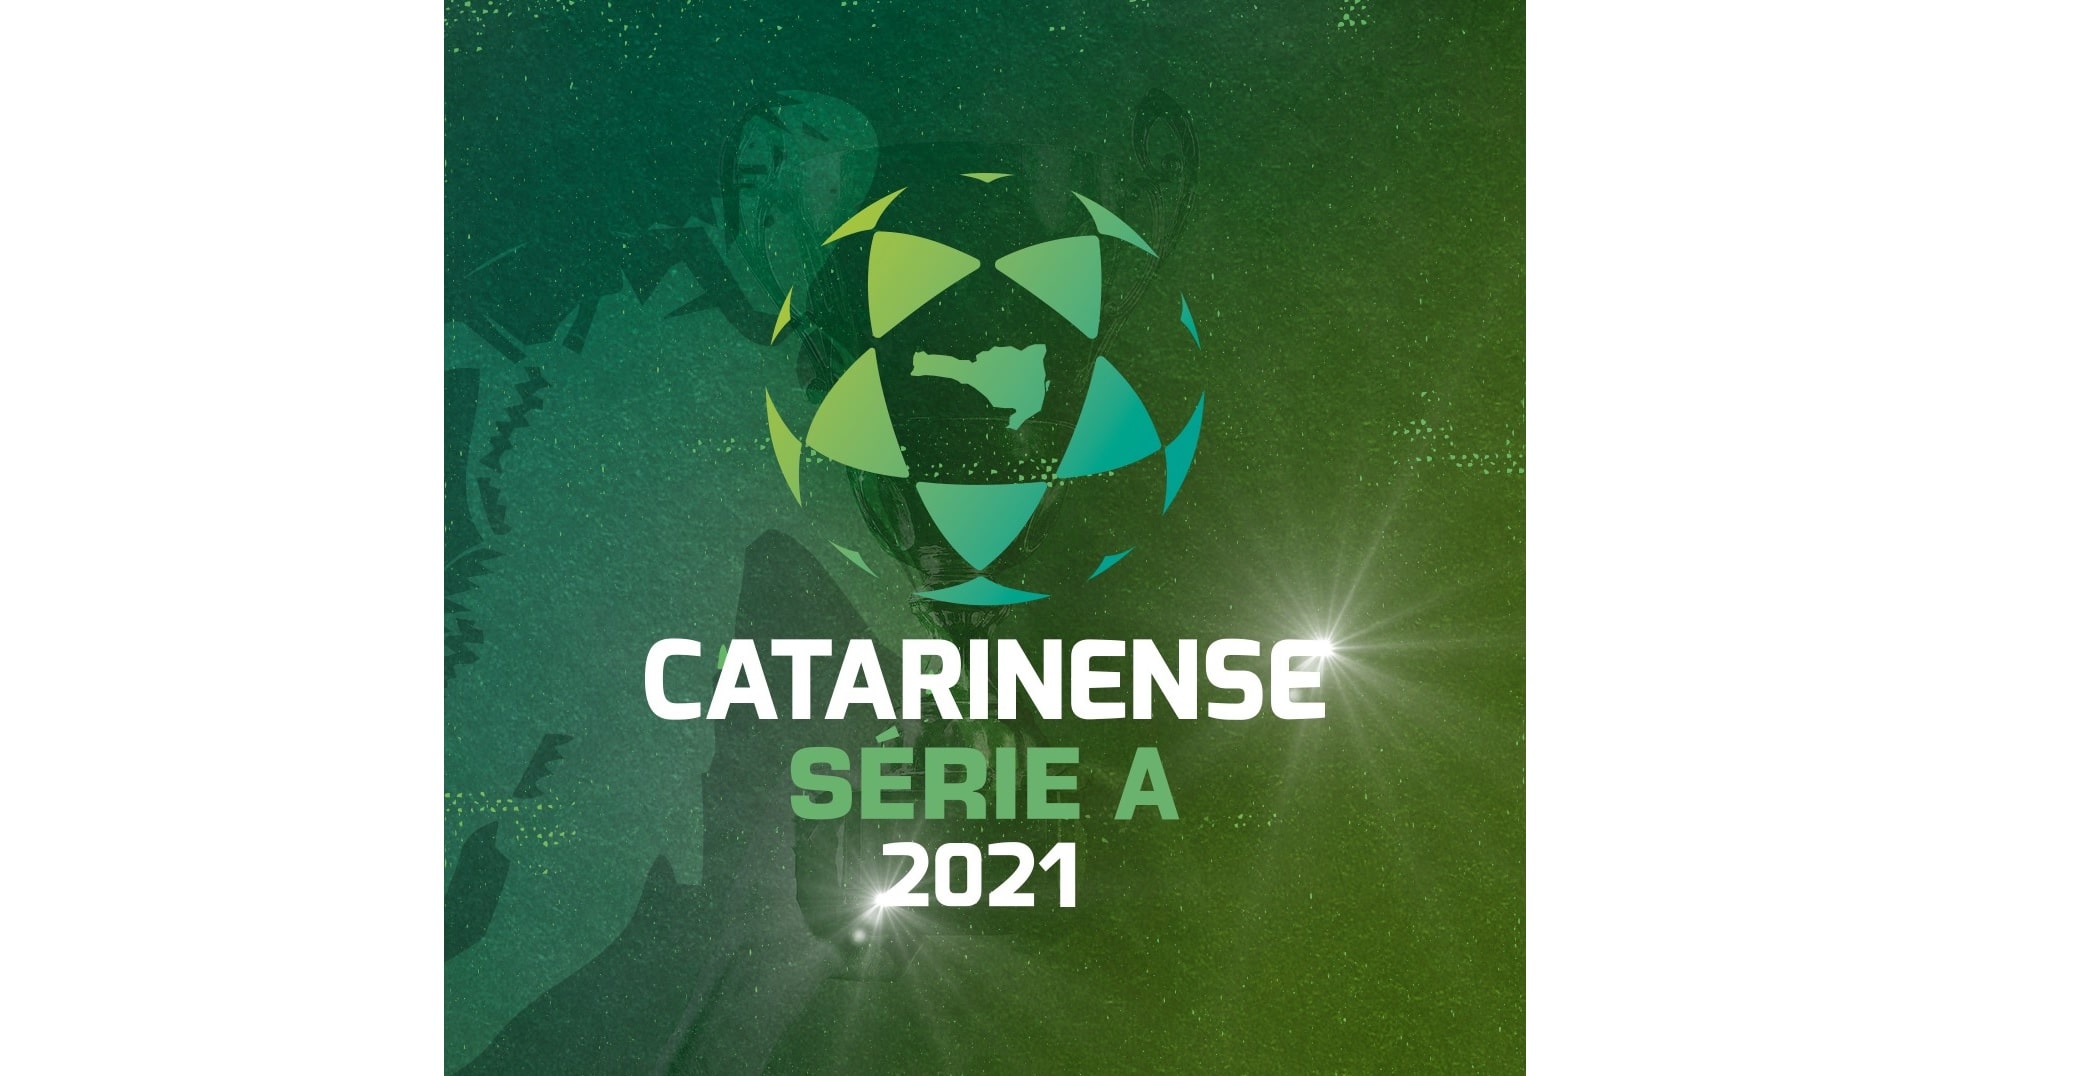 Catarinense 2021